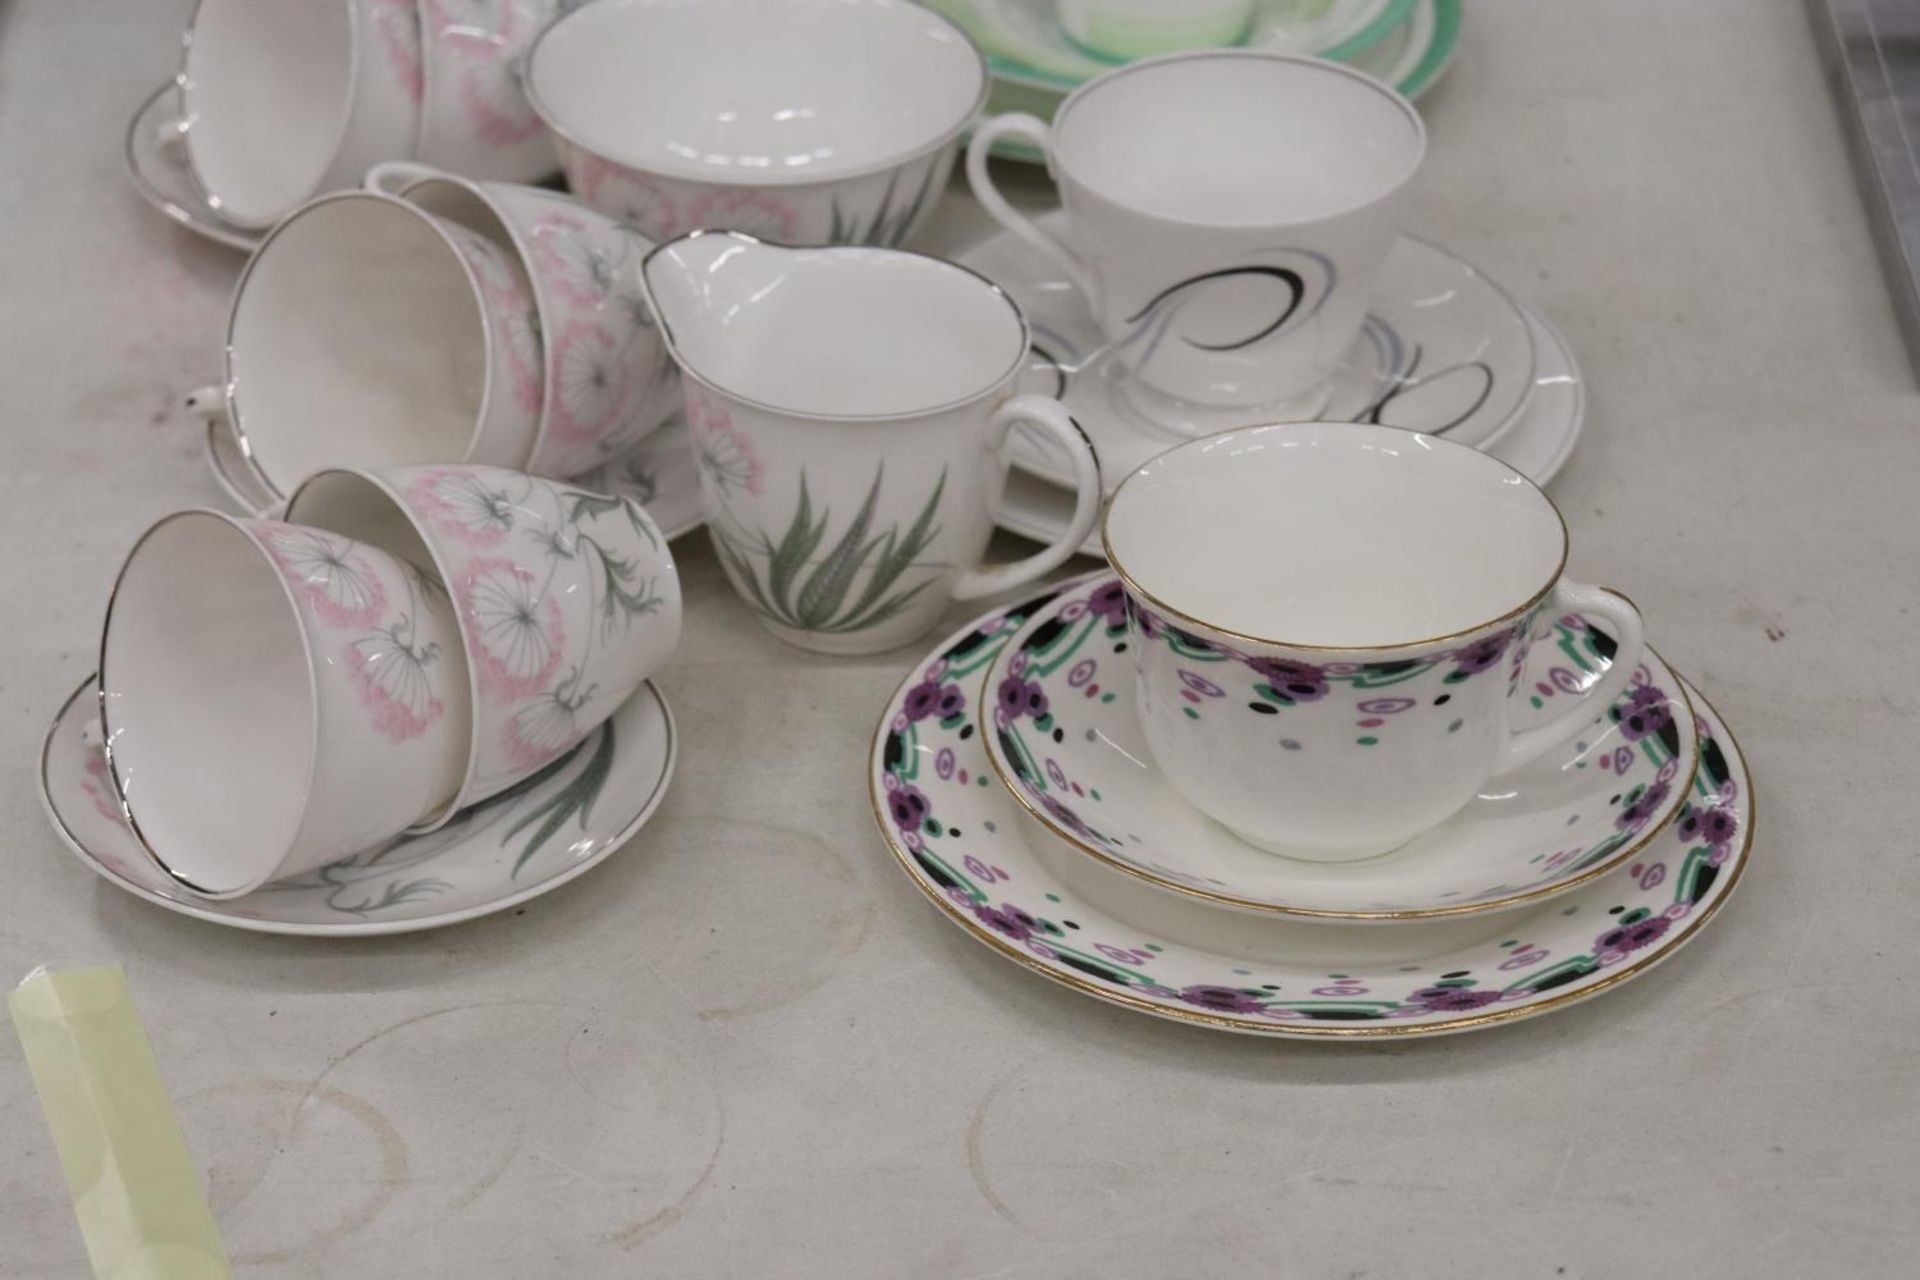 A MIXED LOT OF SHELLEY TEAWARE TO INCLUDE A TEA POT, CUPS, SAUCERS, JUG ETC - Bild 2 aus 6